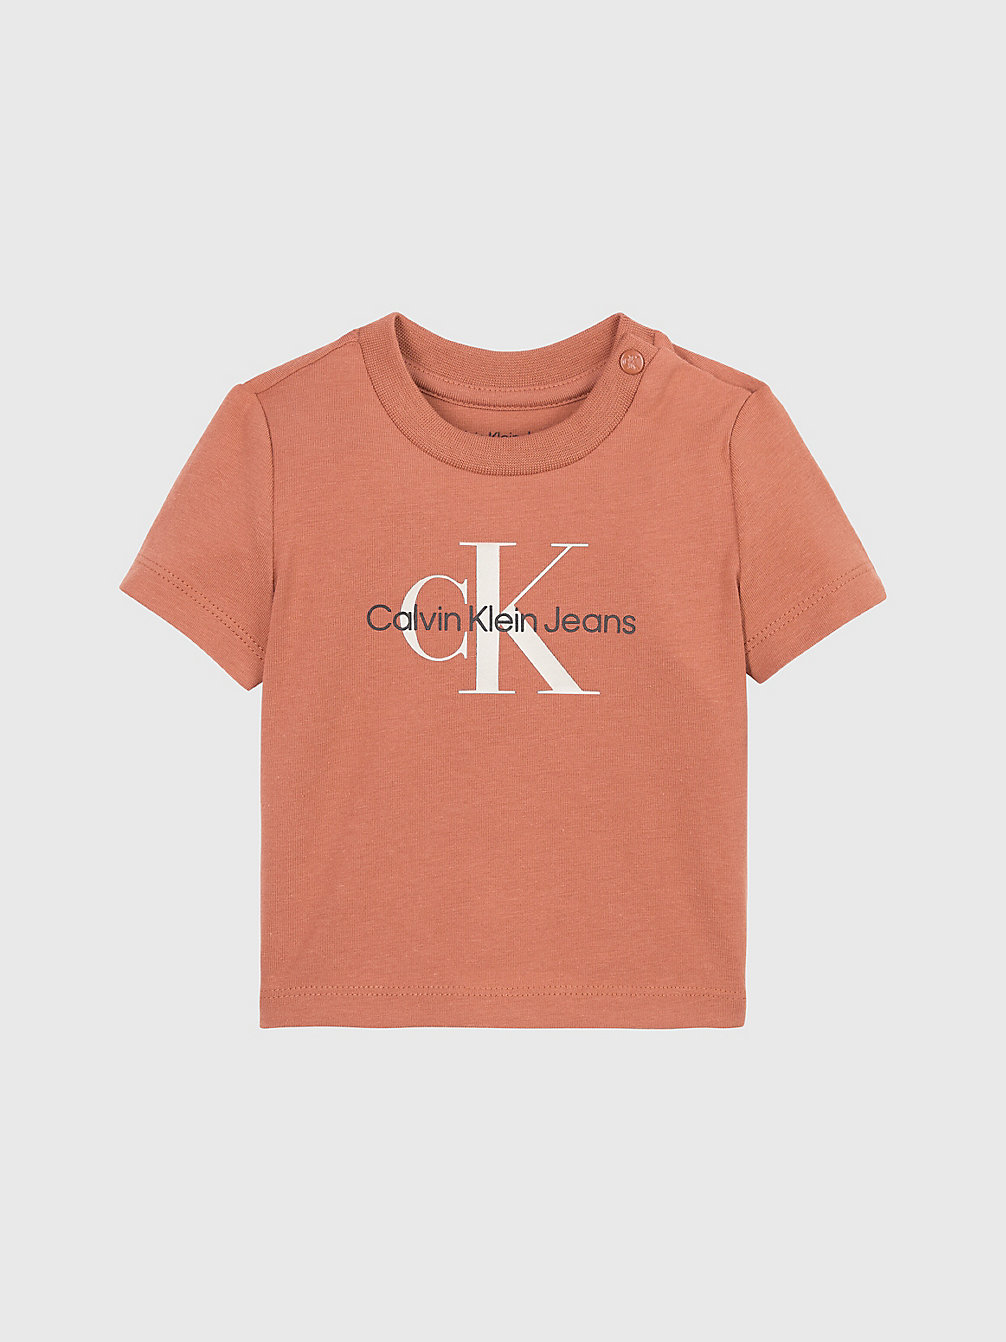 AUBURN > Newborn T-Shirt Met Logo > undefined newborn - Calvin Klein